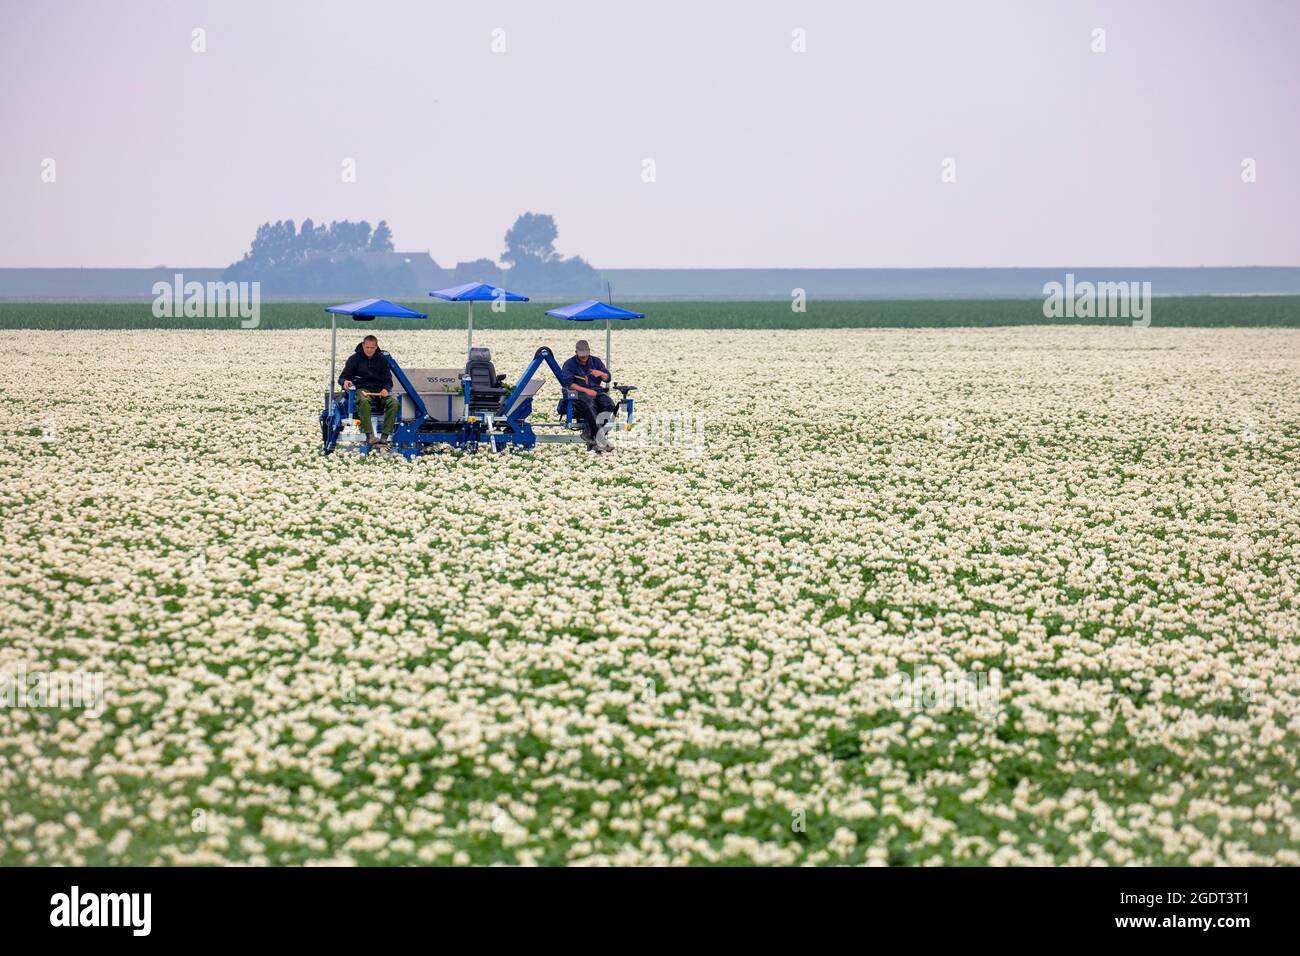 Niederlande, Warffum, blühende Kartoffelfelder. Landwirtschaftliche Arbeiter, die ein Kartoffelfeld kontrollieren, auf der Suche nach kranken Exemplaren. Landwirte kontrollieren das Virus. Stockfoto